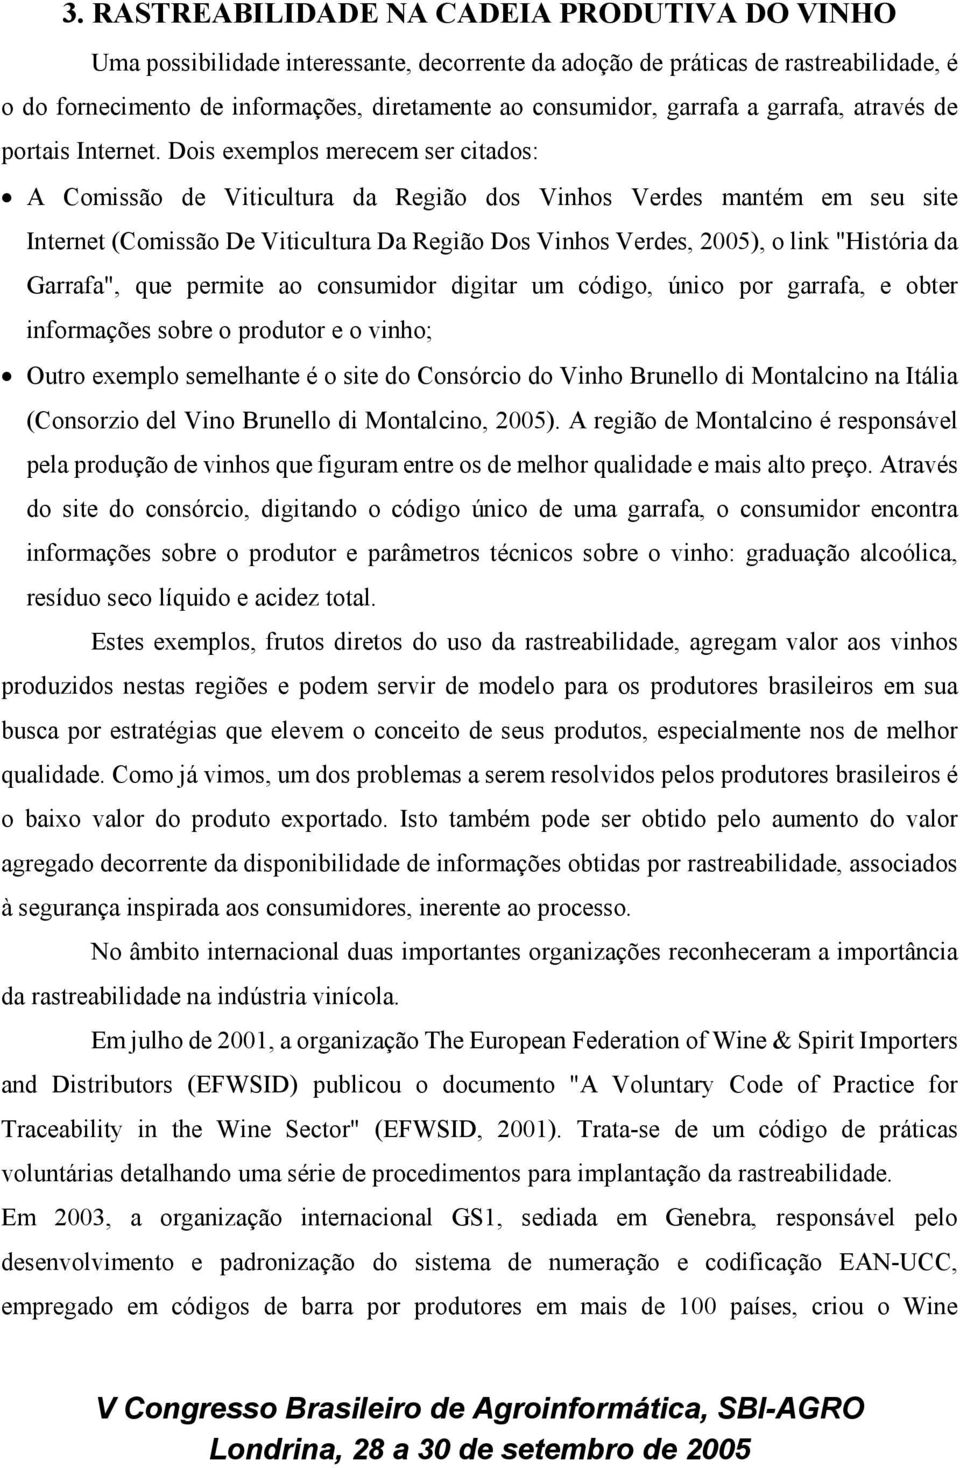 Dois exemplos merecem ser citados: A Comissão de Viticultura da Região dos Vinhos Verdes mantém em seu site Internet (Comissão De Viticultura Da Região Dos Vinhos Verdes, 2005), o link "História da